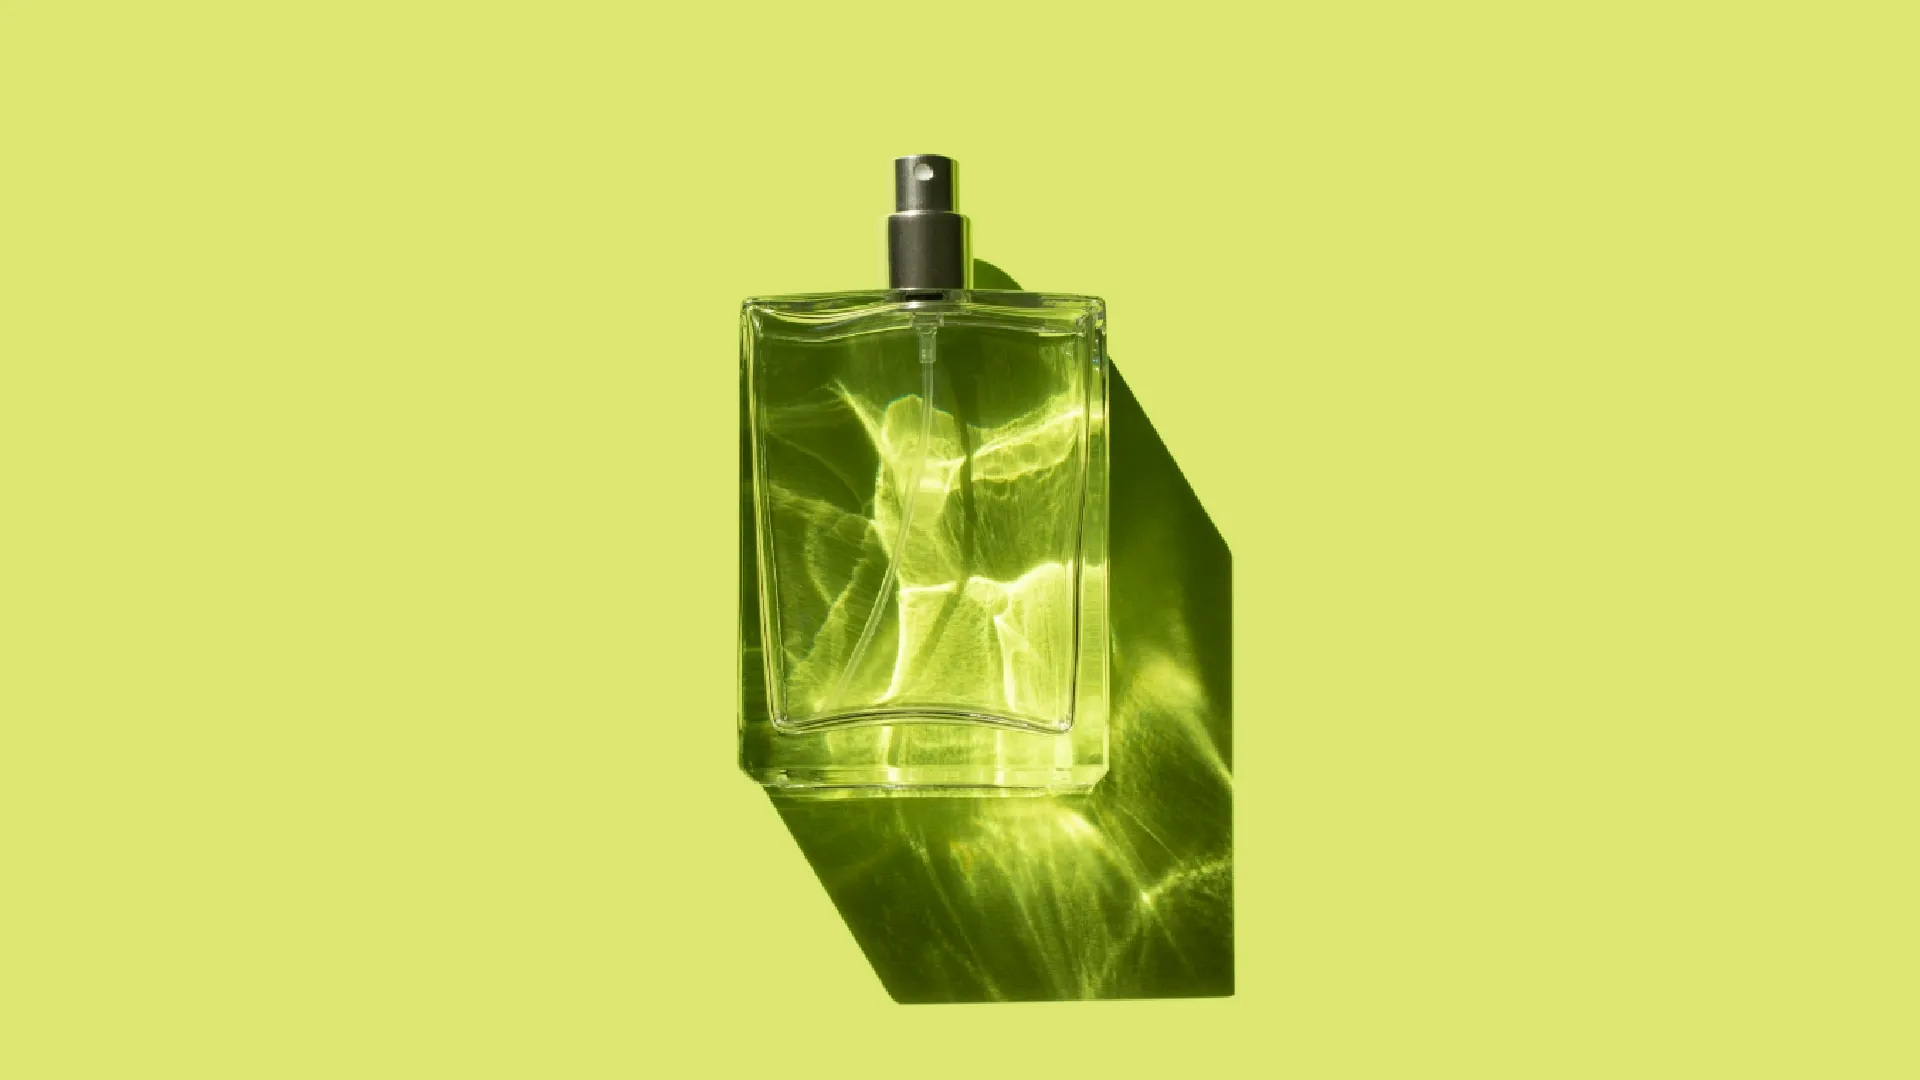 O Boticário: TOP 4 perfumes femininos para impressionar geral